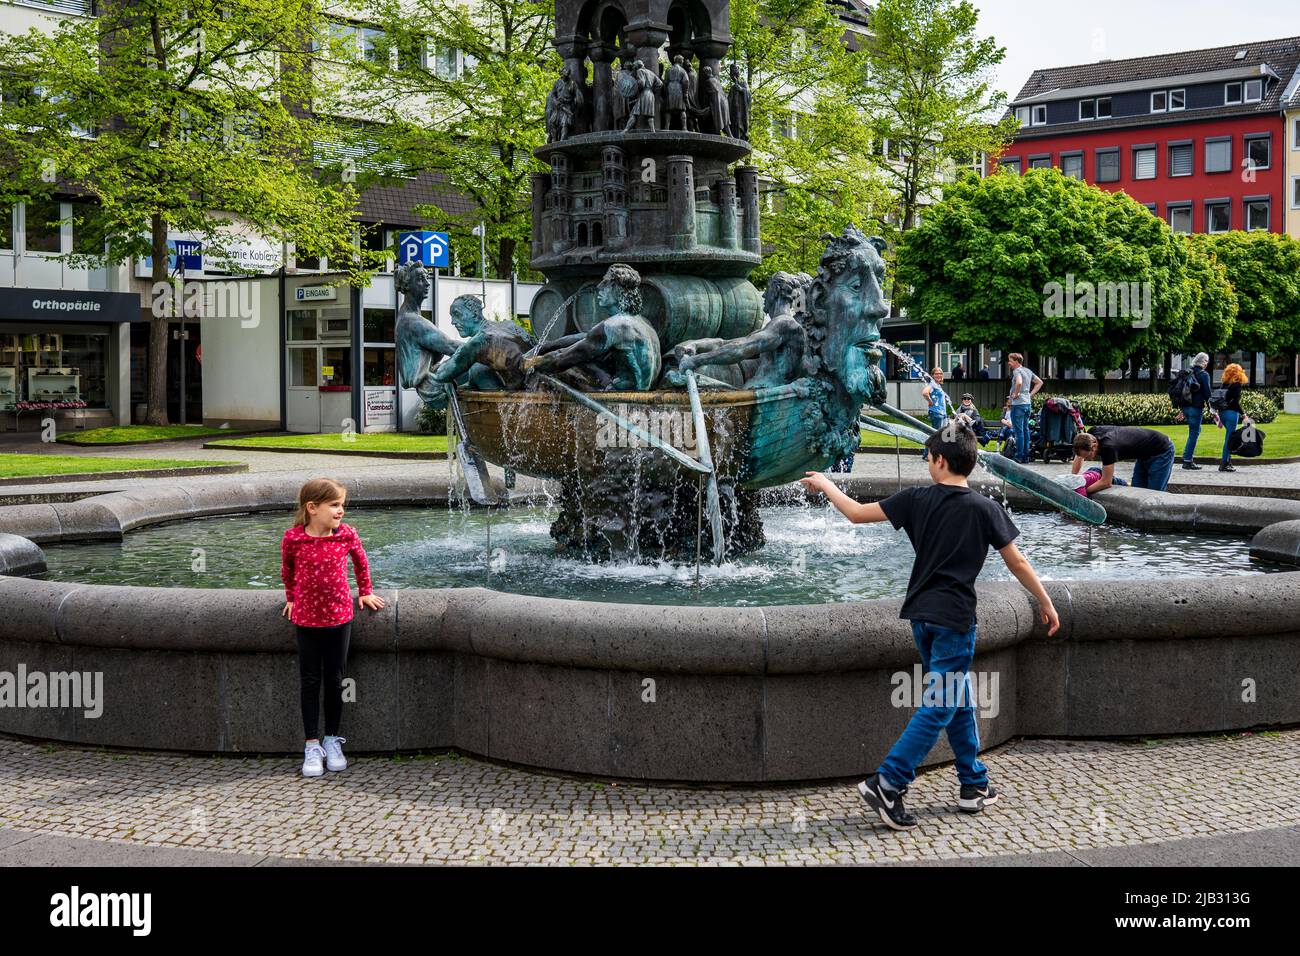 Historiensaule fountain in Koblenz, Germany Stock Photo